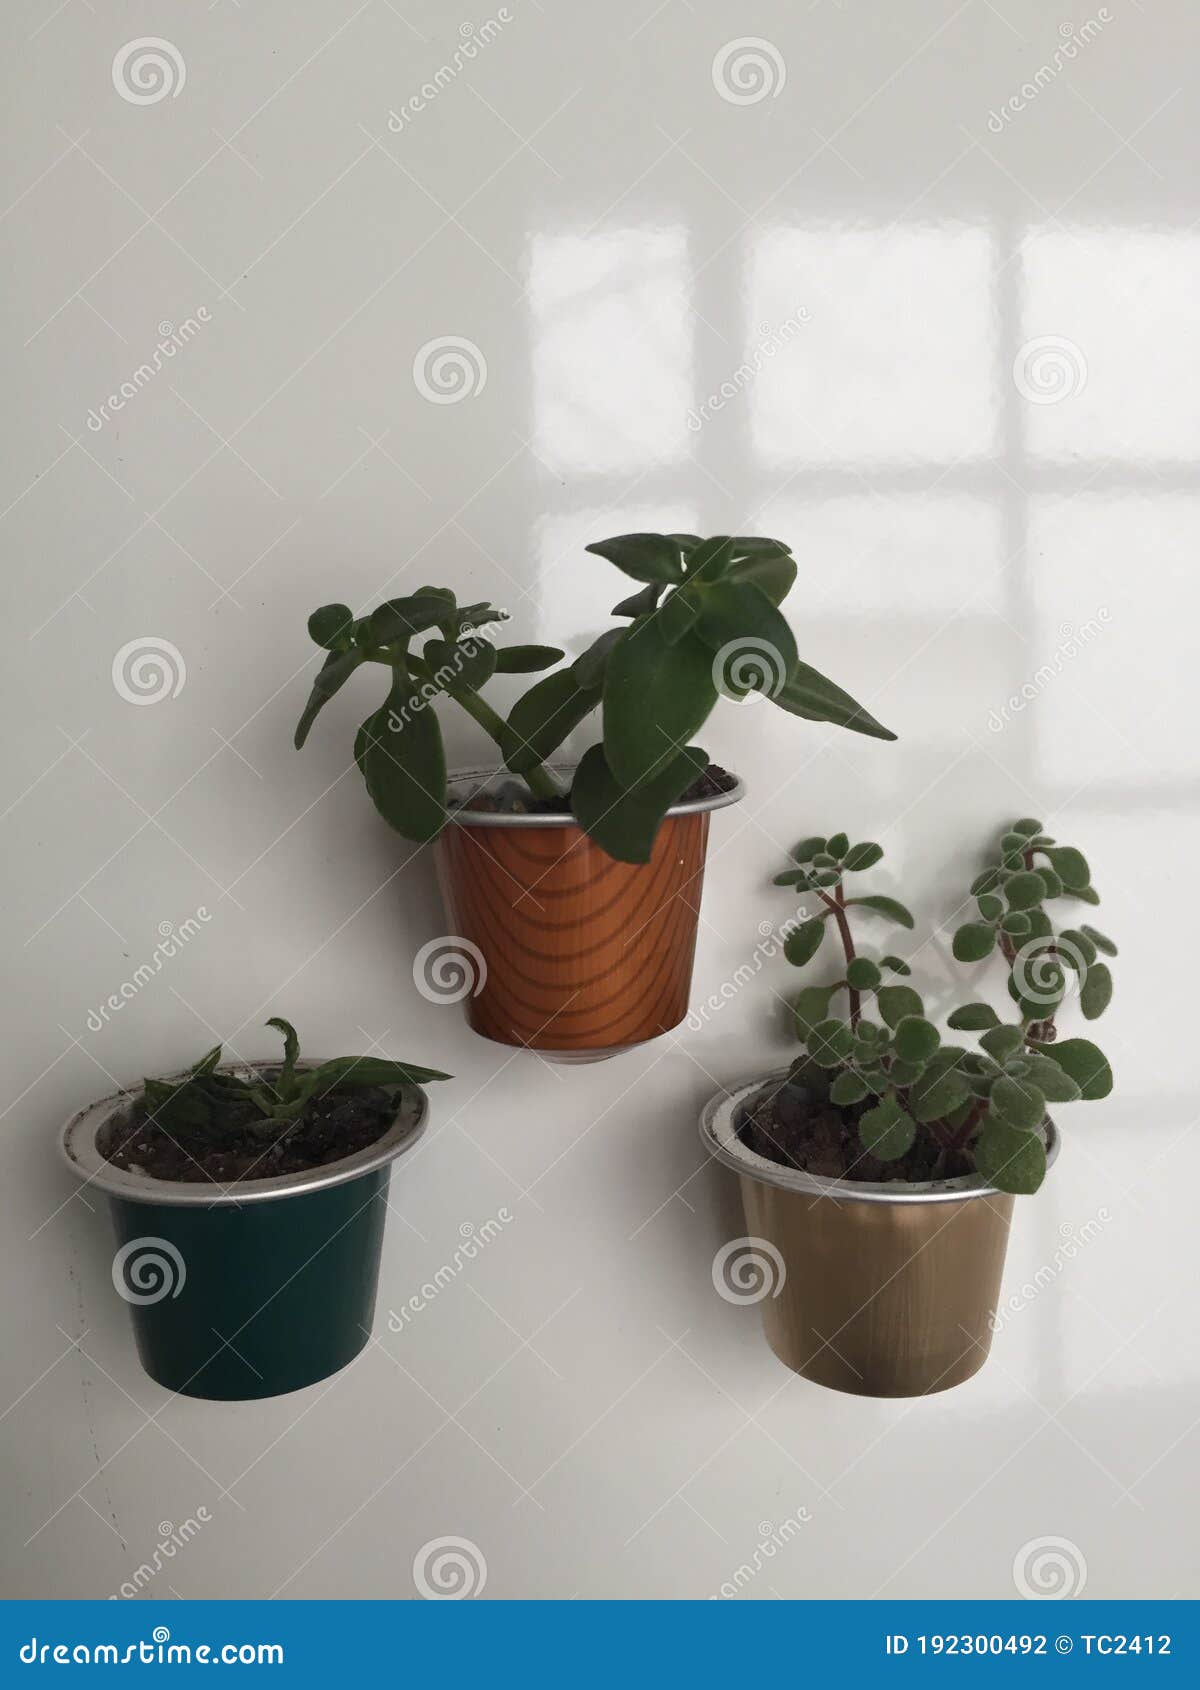 little plants